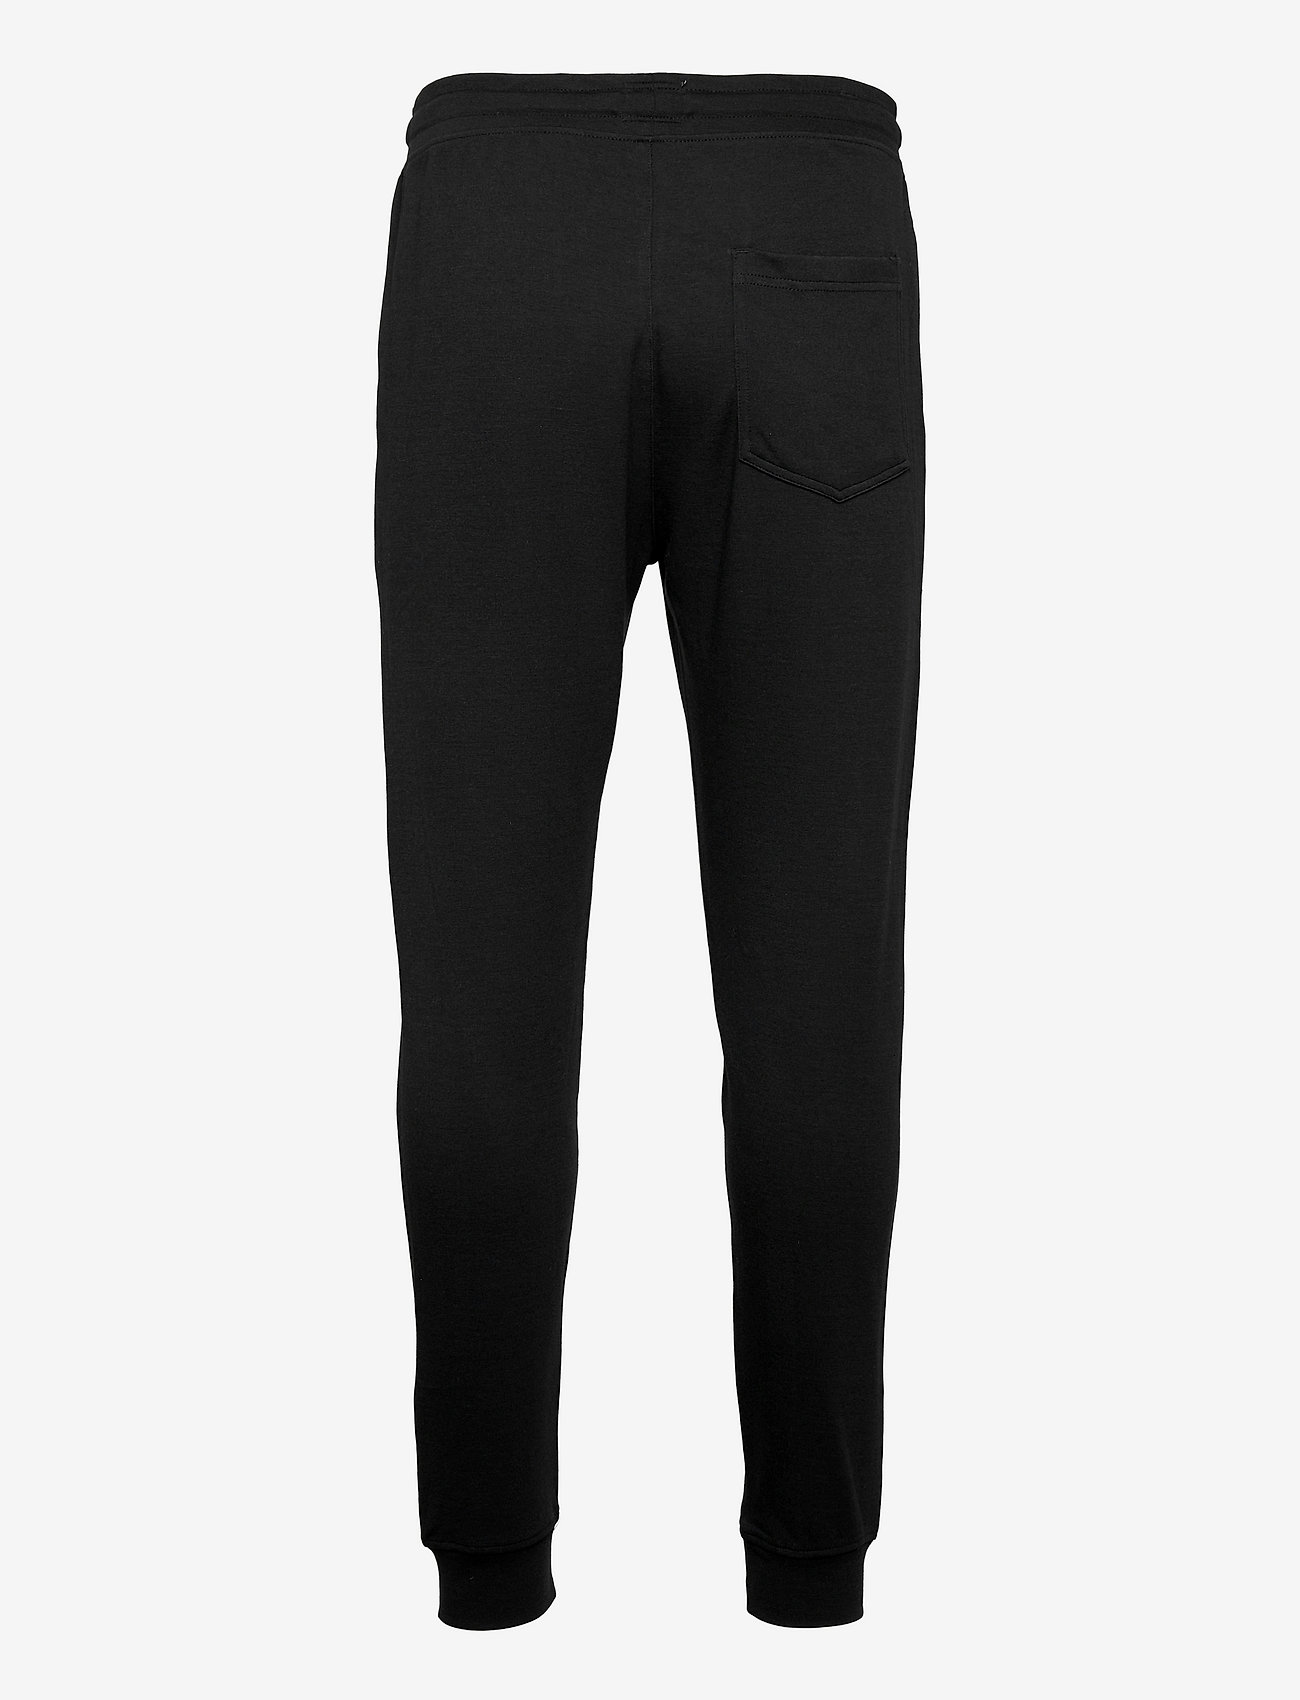 JBS of Denmark - JBS of DK sweatpants FSC, - jogginghose - black - 1